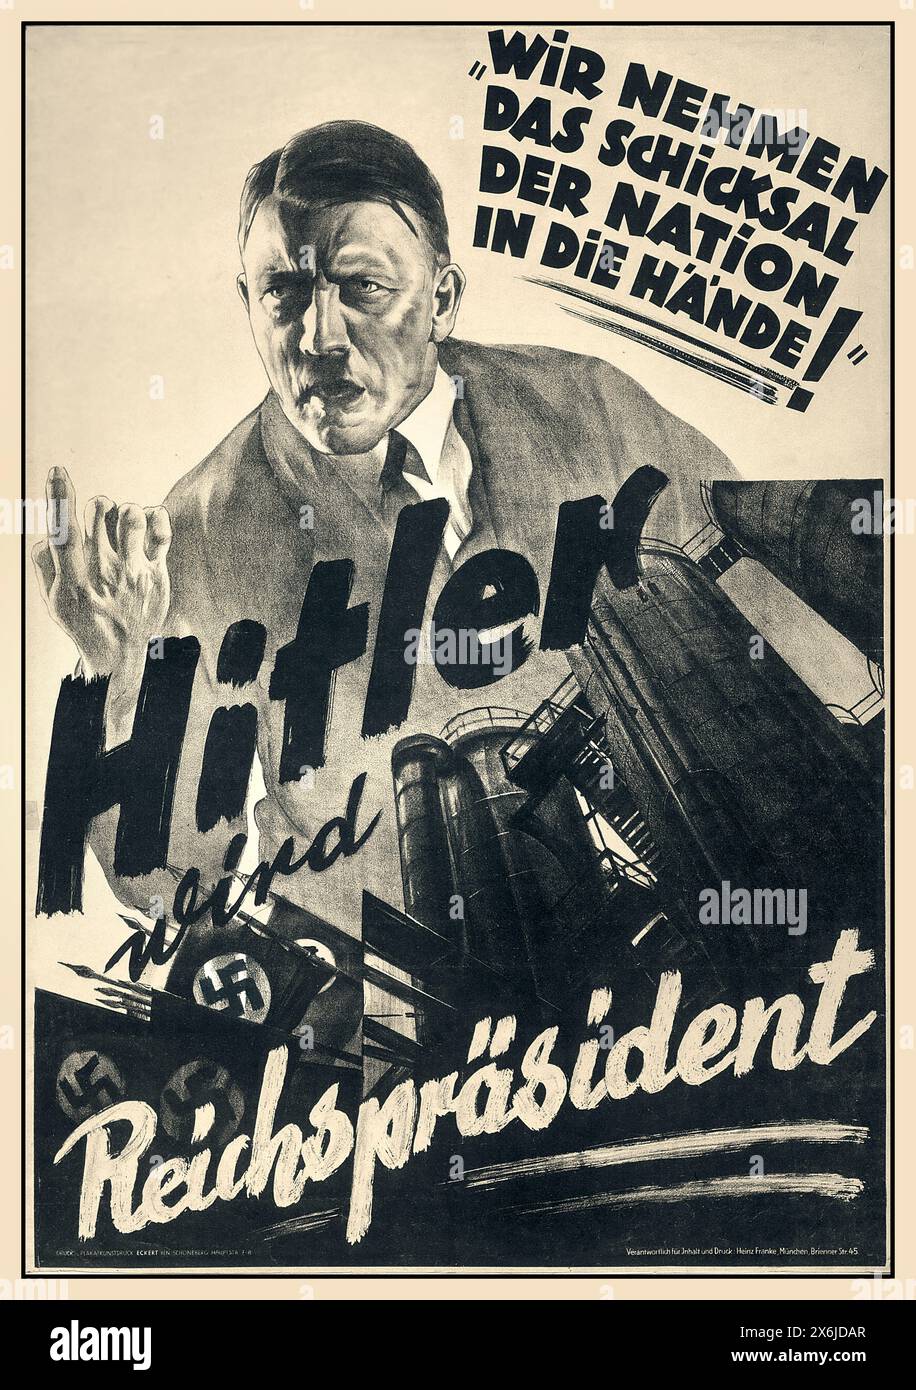 ADOLF HITLER NSDAP Election d'avant-guerre 1930 affiche de propagande allemande avec Adolf Hitler comme 'Reichsprasident' déclarant 'nous prenons le destin de la nation dans notre main' Allemagne nazie Banque D'Images